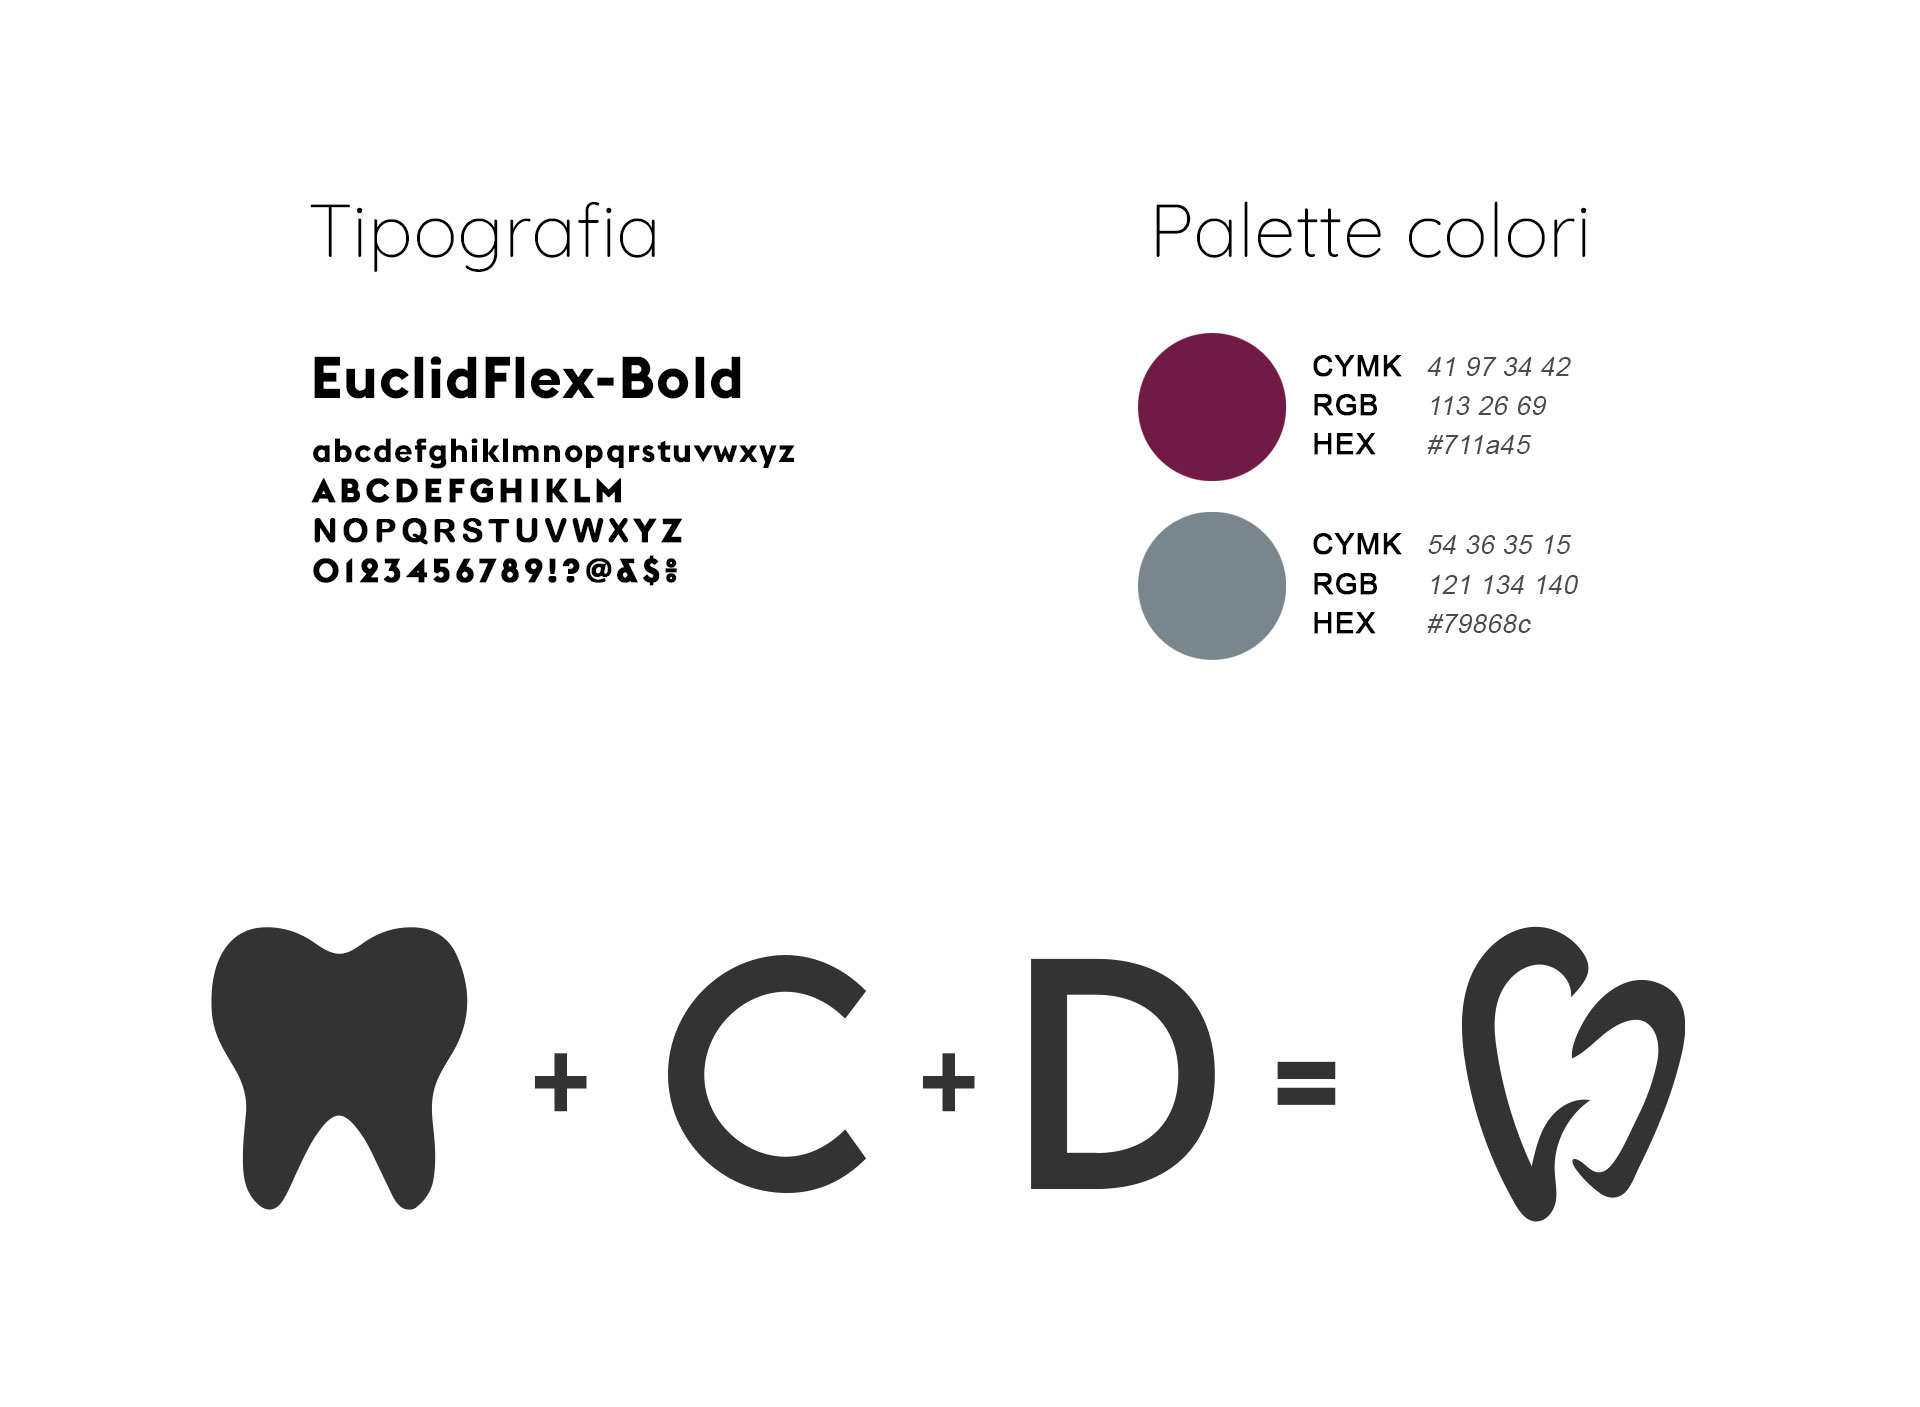 colori-centro-dentale